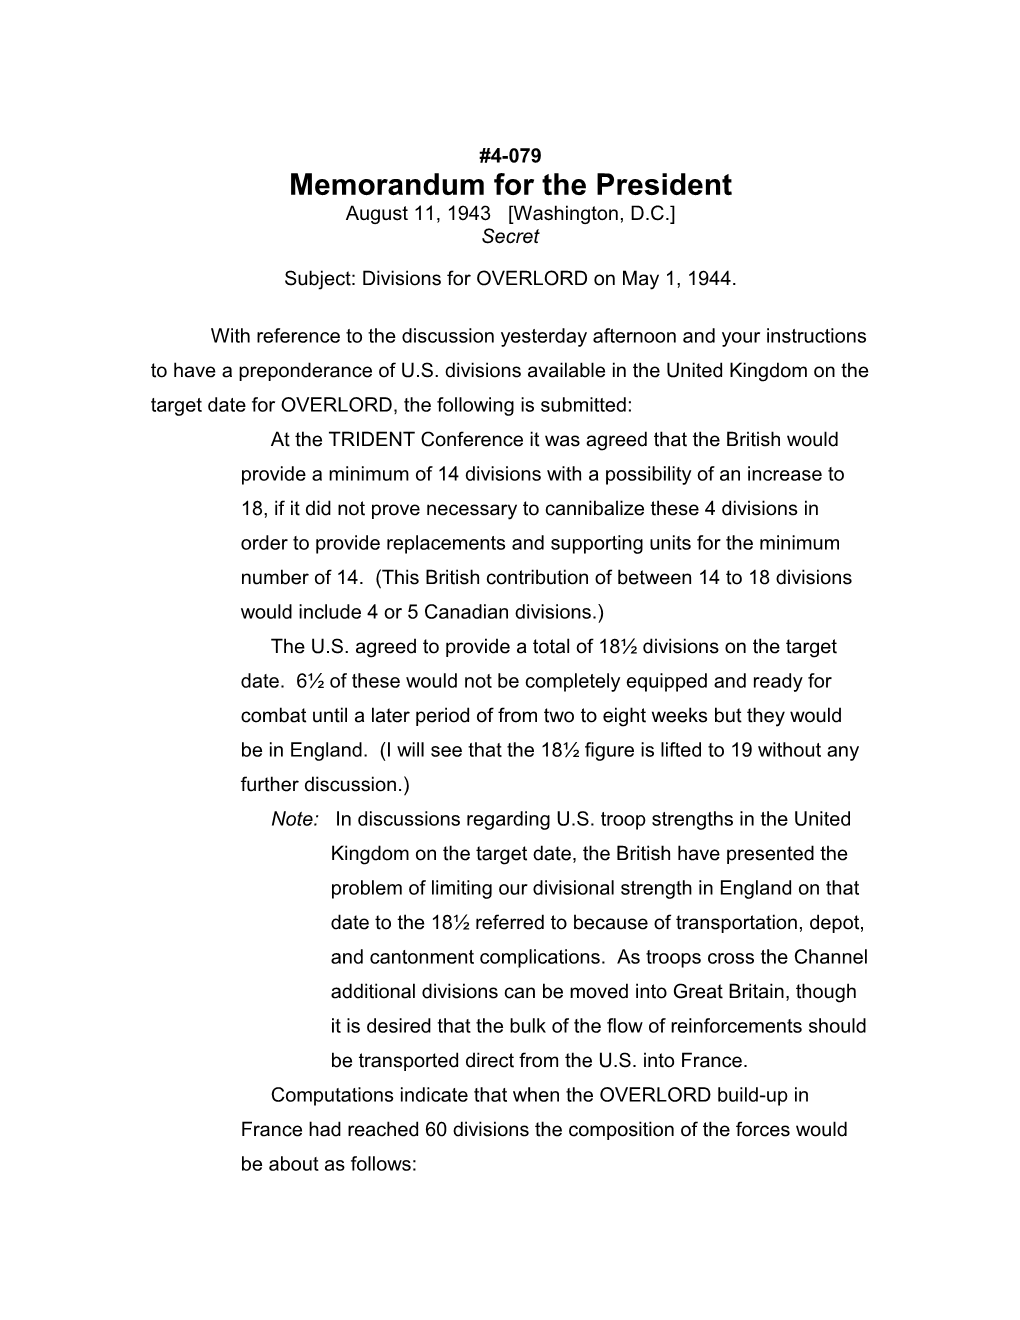 Memorandum for the President s2